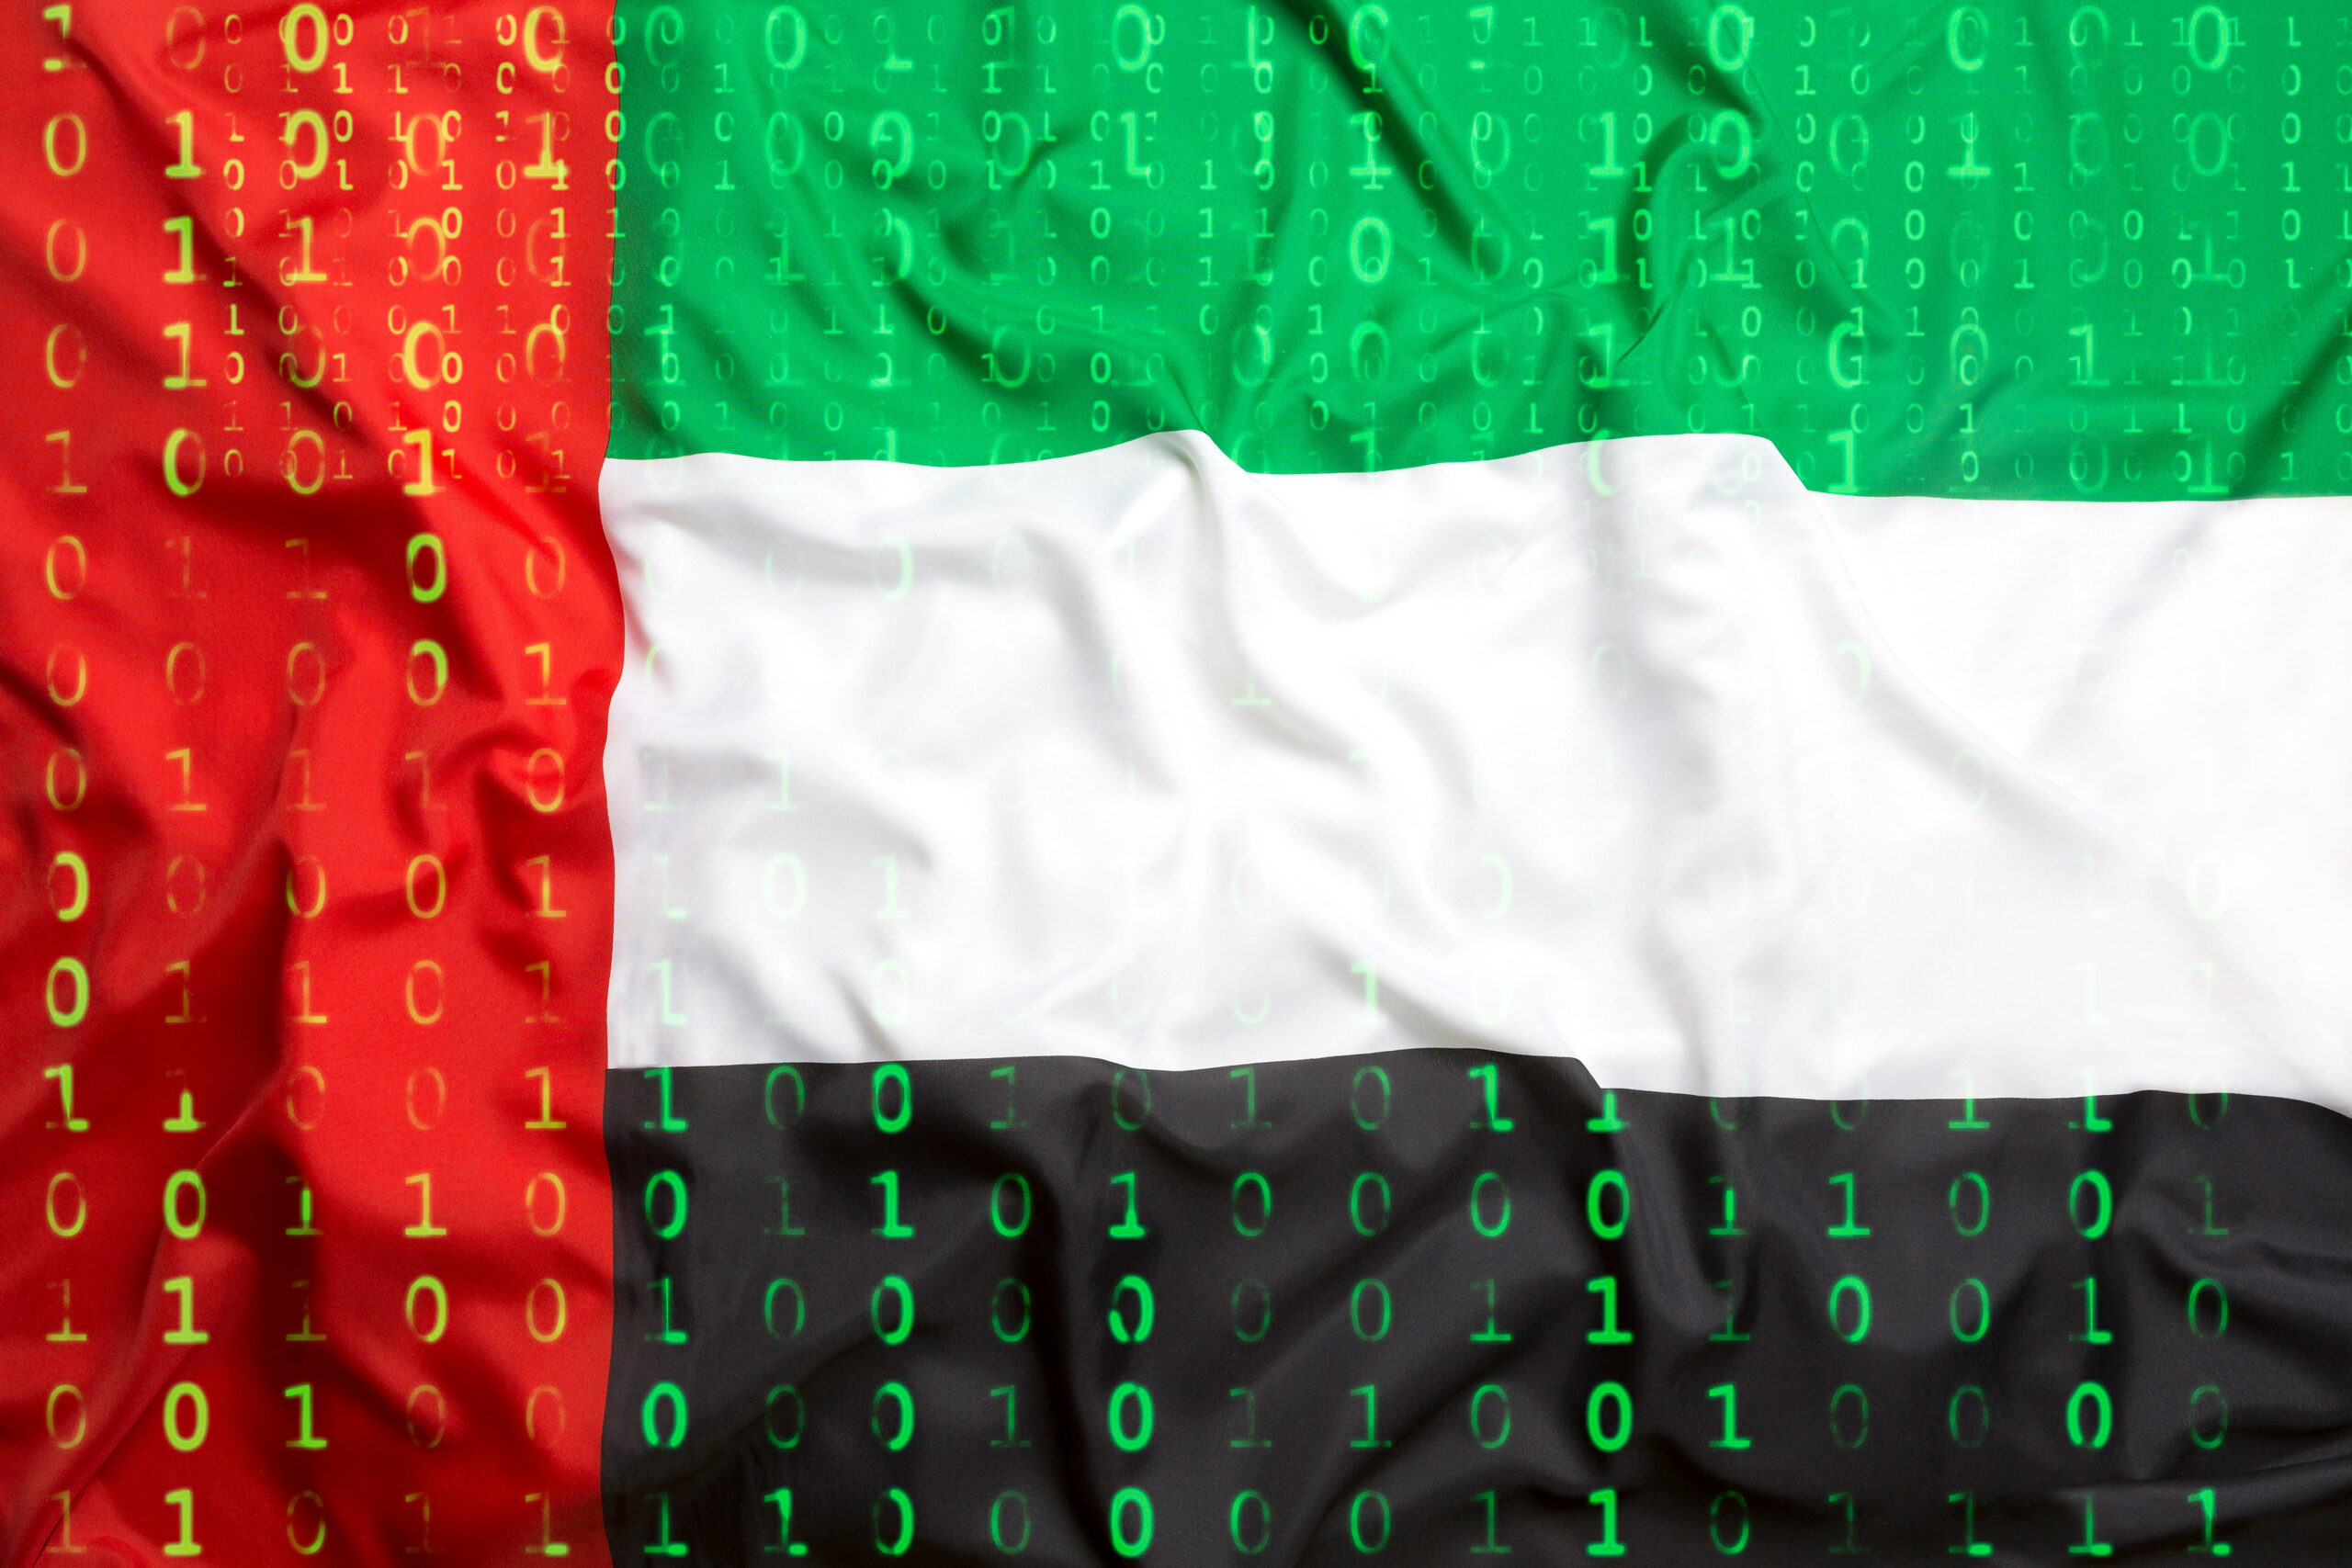 อุปกรณ์และแอปเครือข่าย UAE มากกว่า 150 รายการเปิดเผยทางออนไลน์